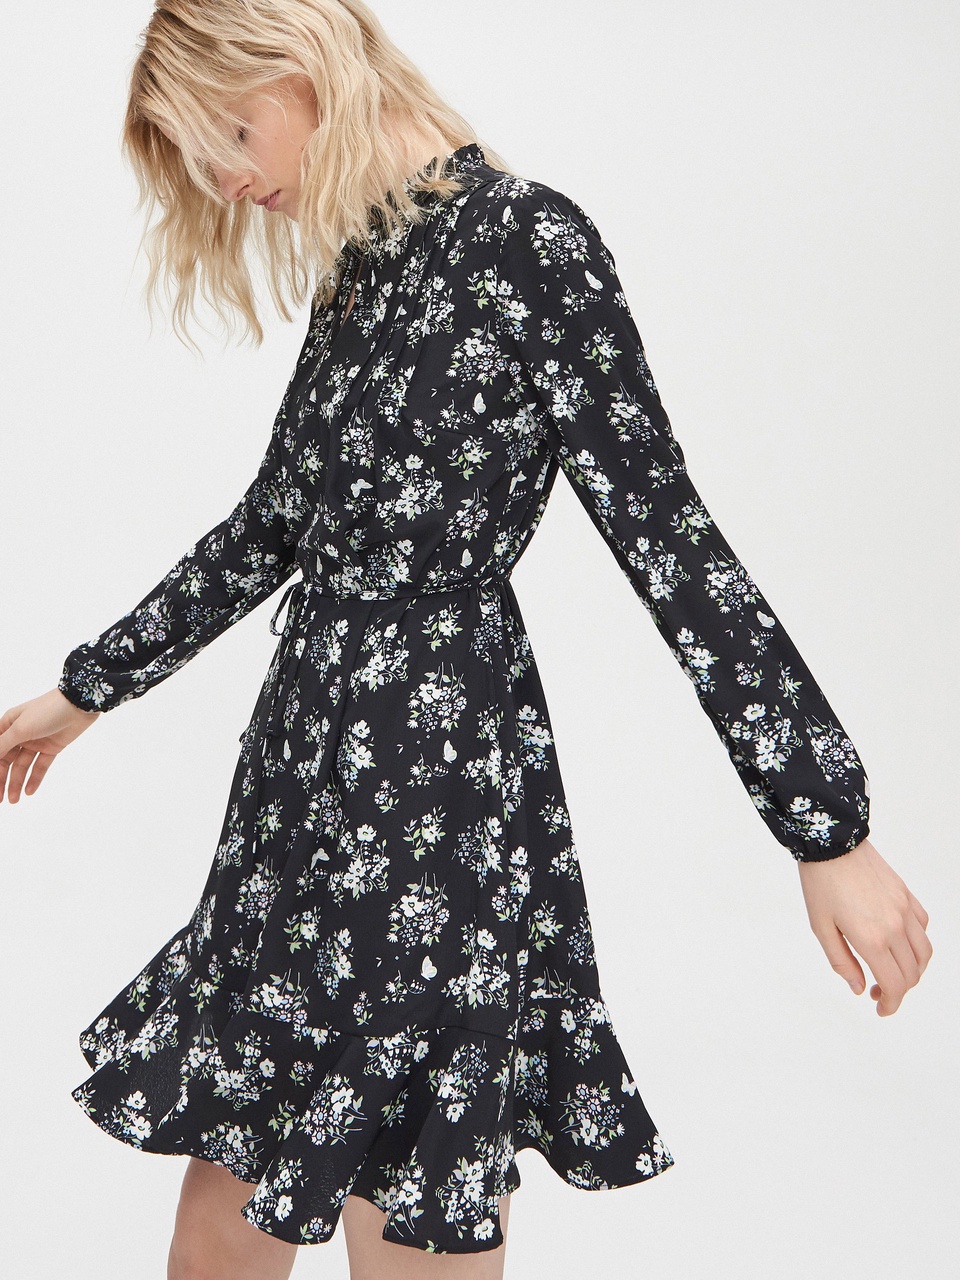 Плиссированное мини-платье - 1 699 ₽, заказать онлайн.